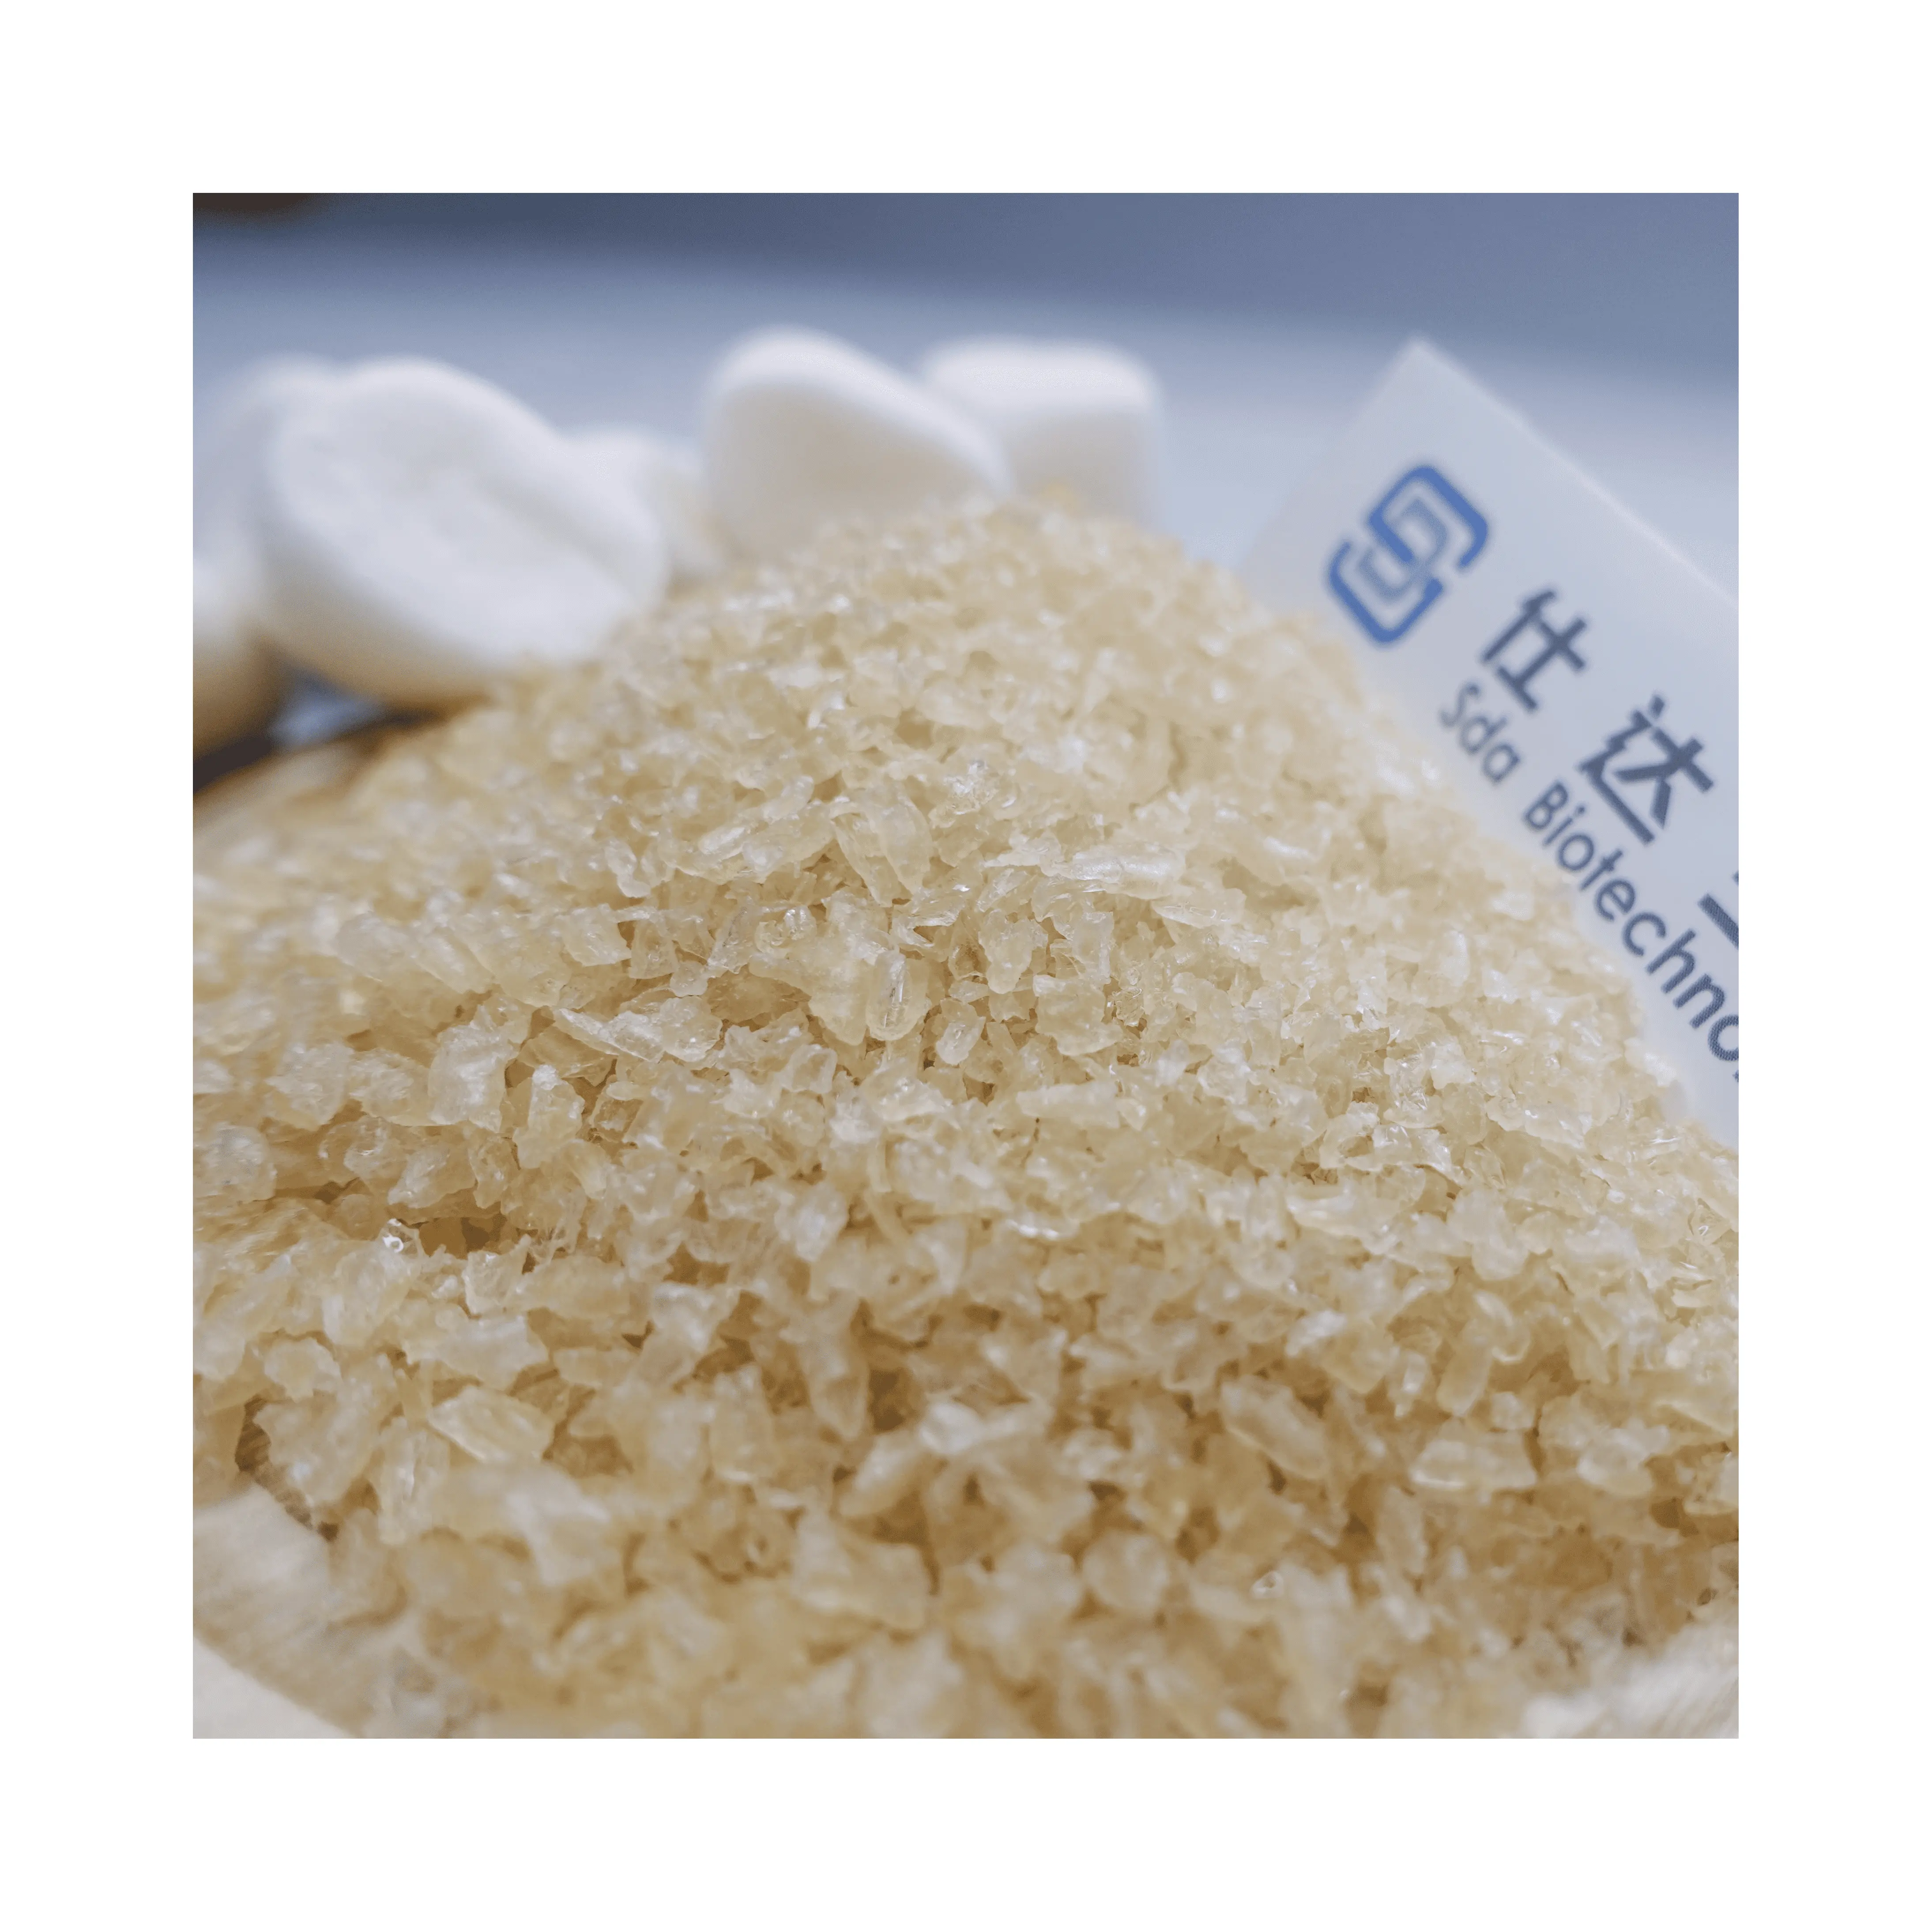 Hochwertige Gelatine Chinese Company Schweine gelatine granulat haccp Lebensmittel rezepte mit nicht aromatisierter Gelatine aus Schweine haut